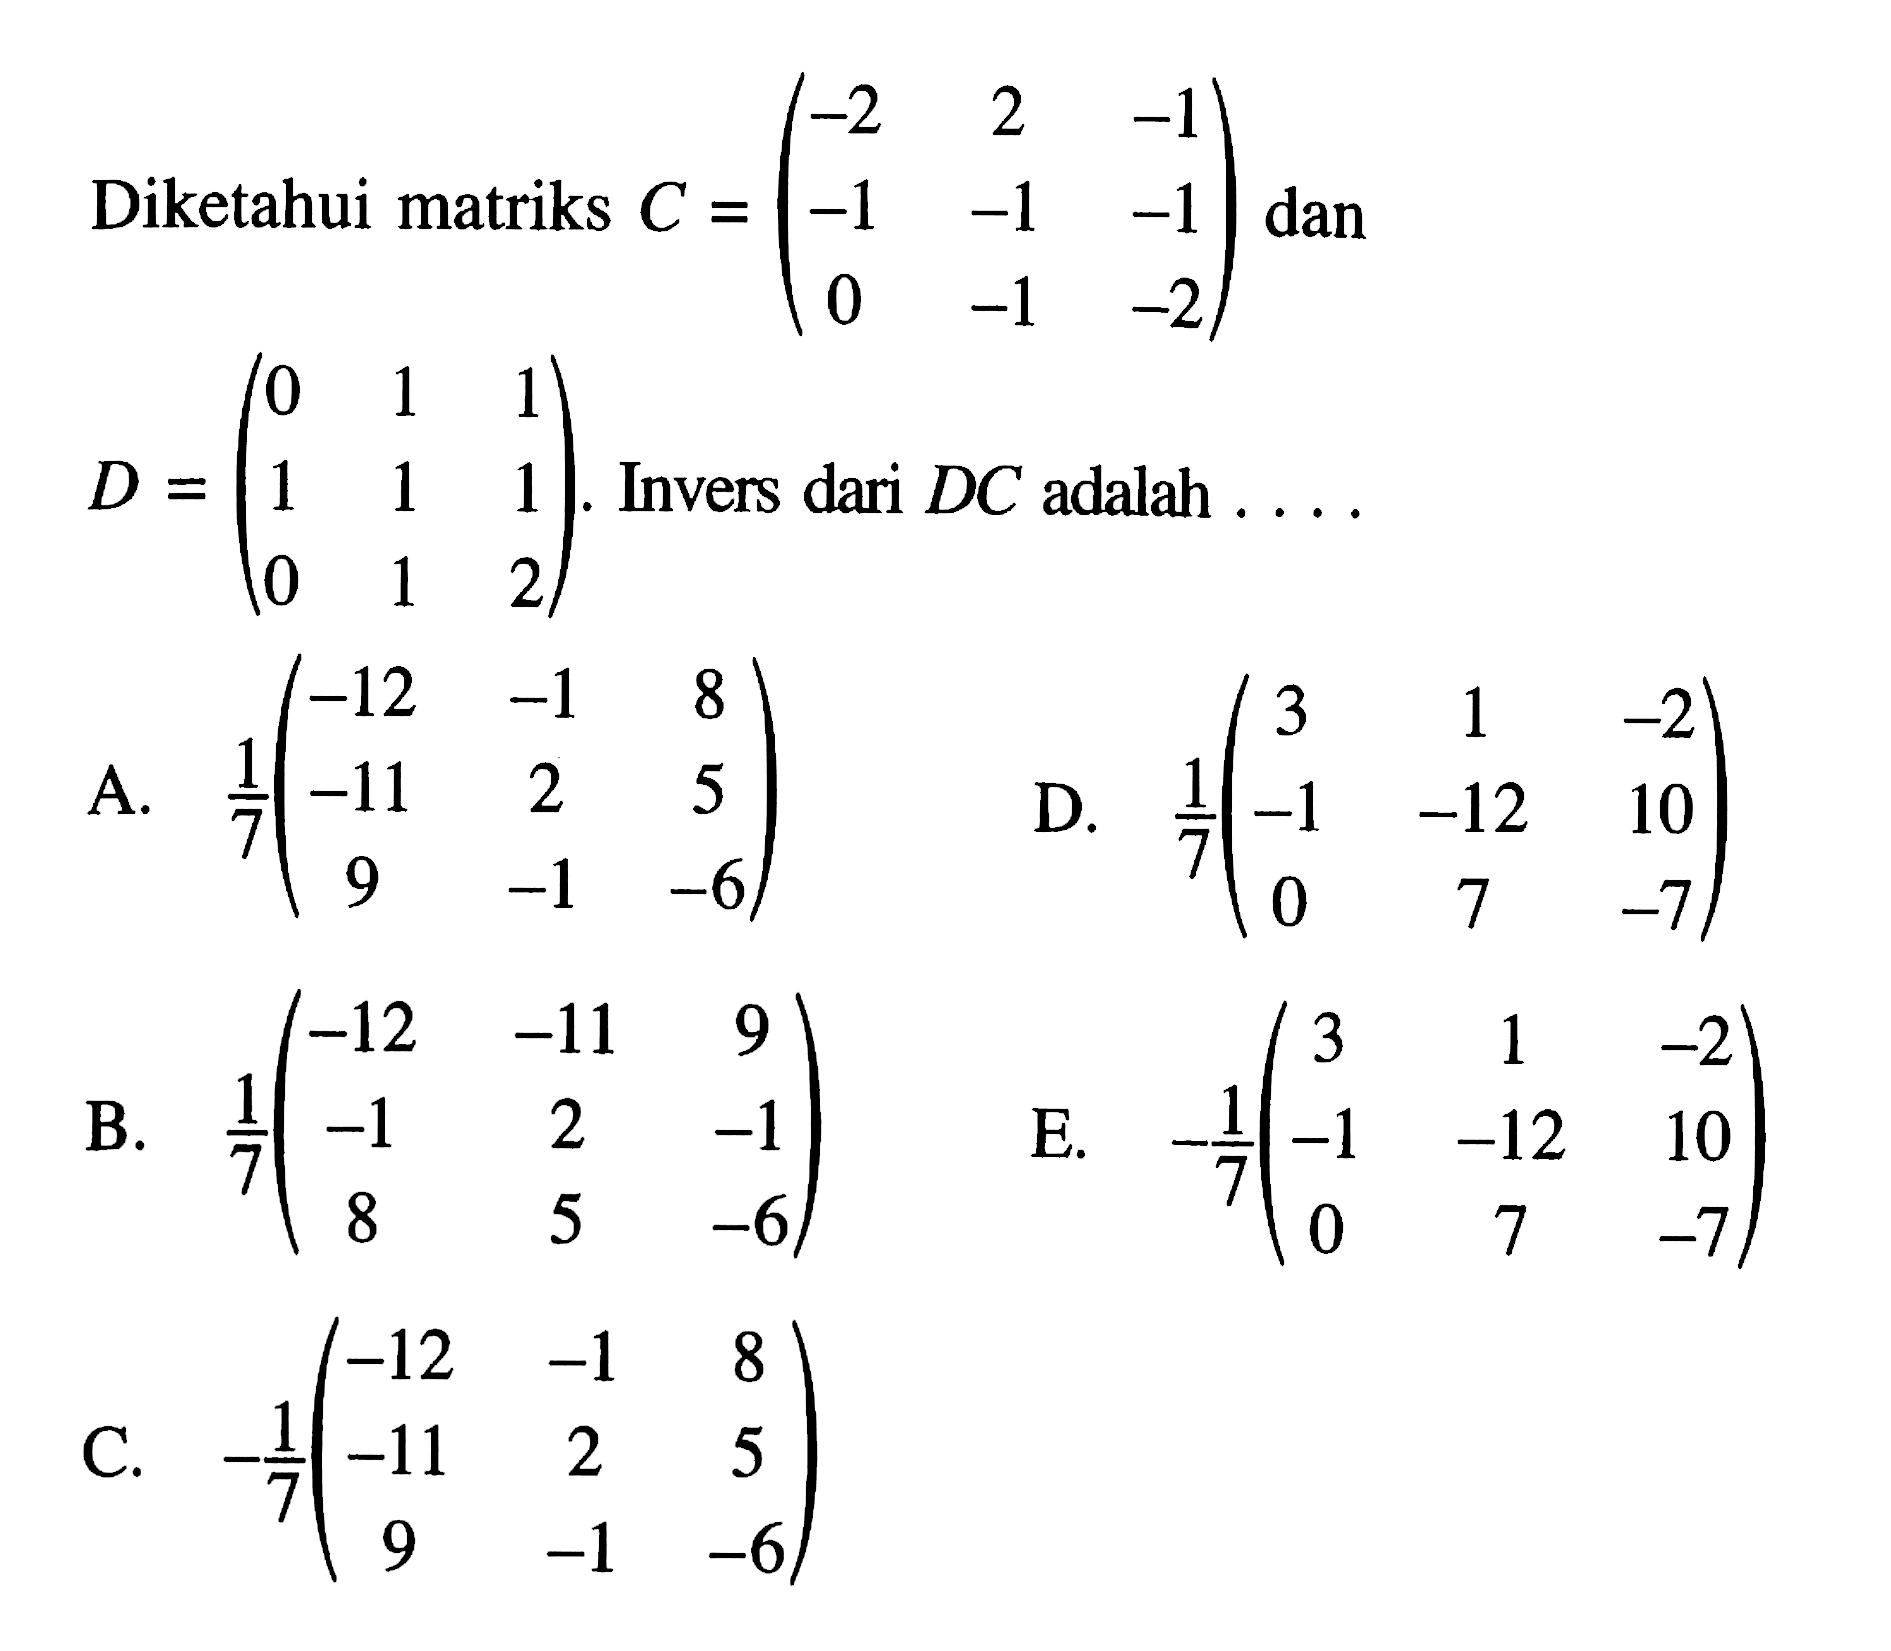 Diketahui matriks C=(-2 2 -1 -1 -1 -1 0 -1 -2) dan D=(0 1 1 1 1 1 0 1 2). Invers dari DC adalah ...